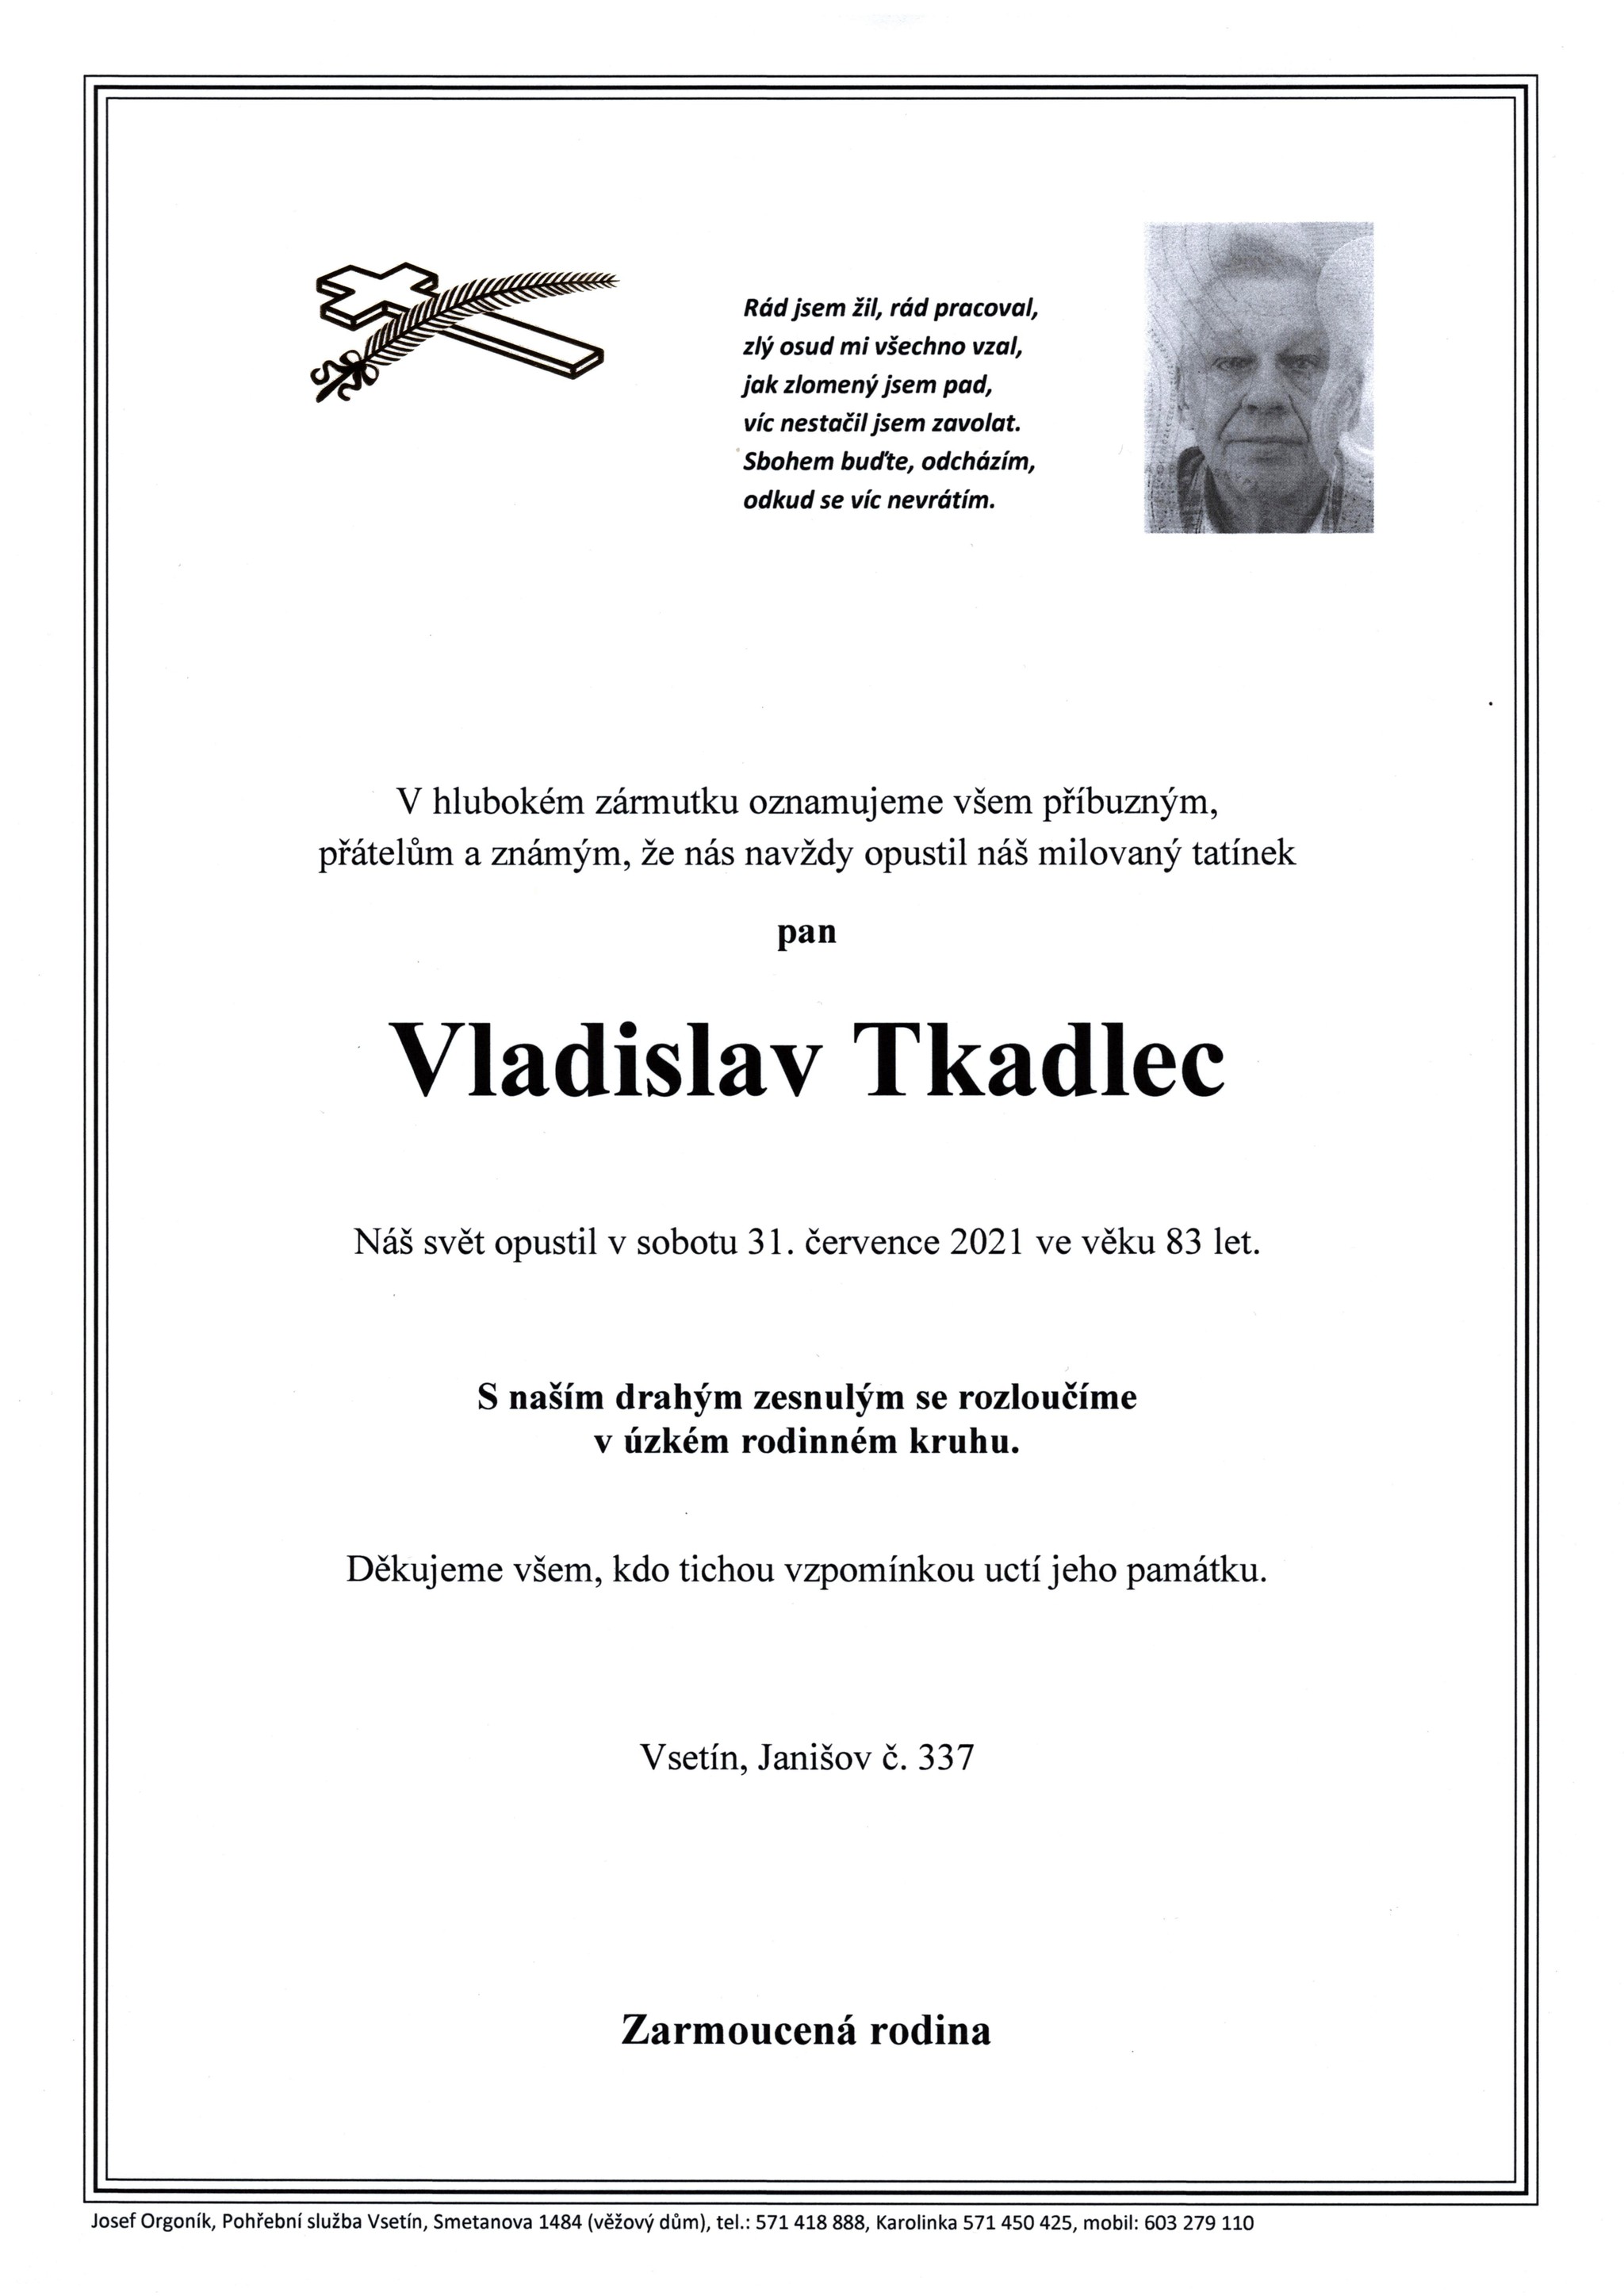 Vladislav Tkadlec